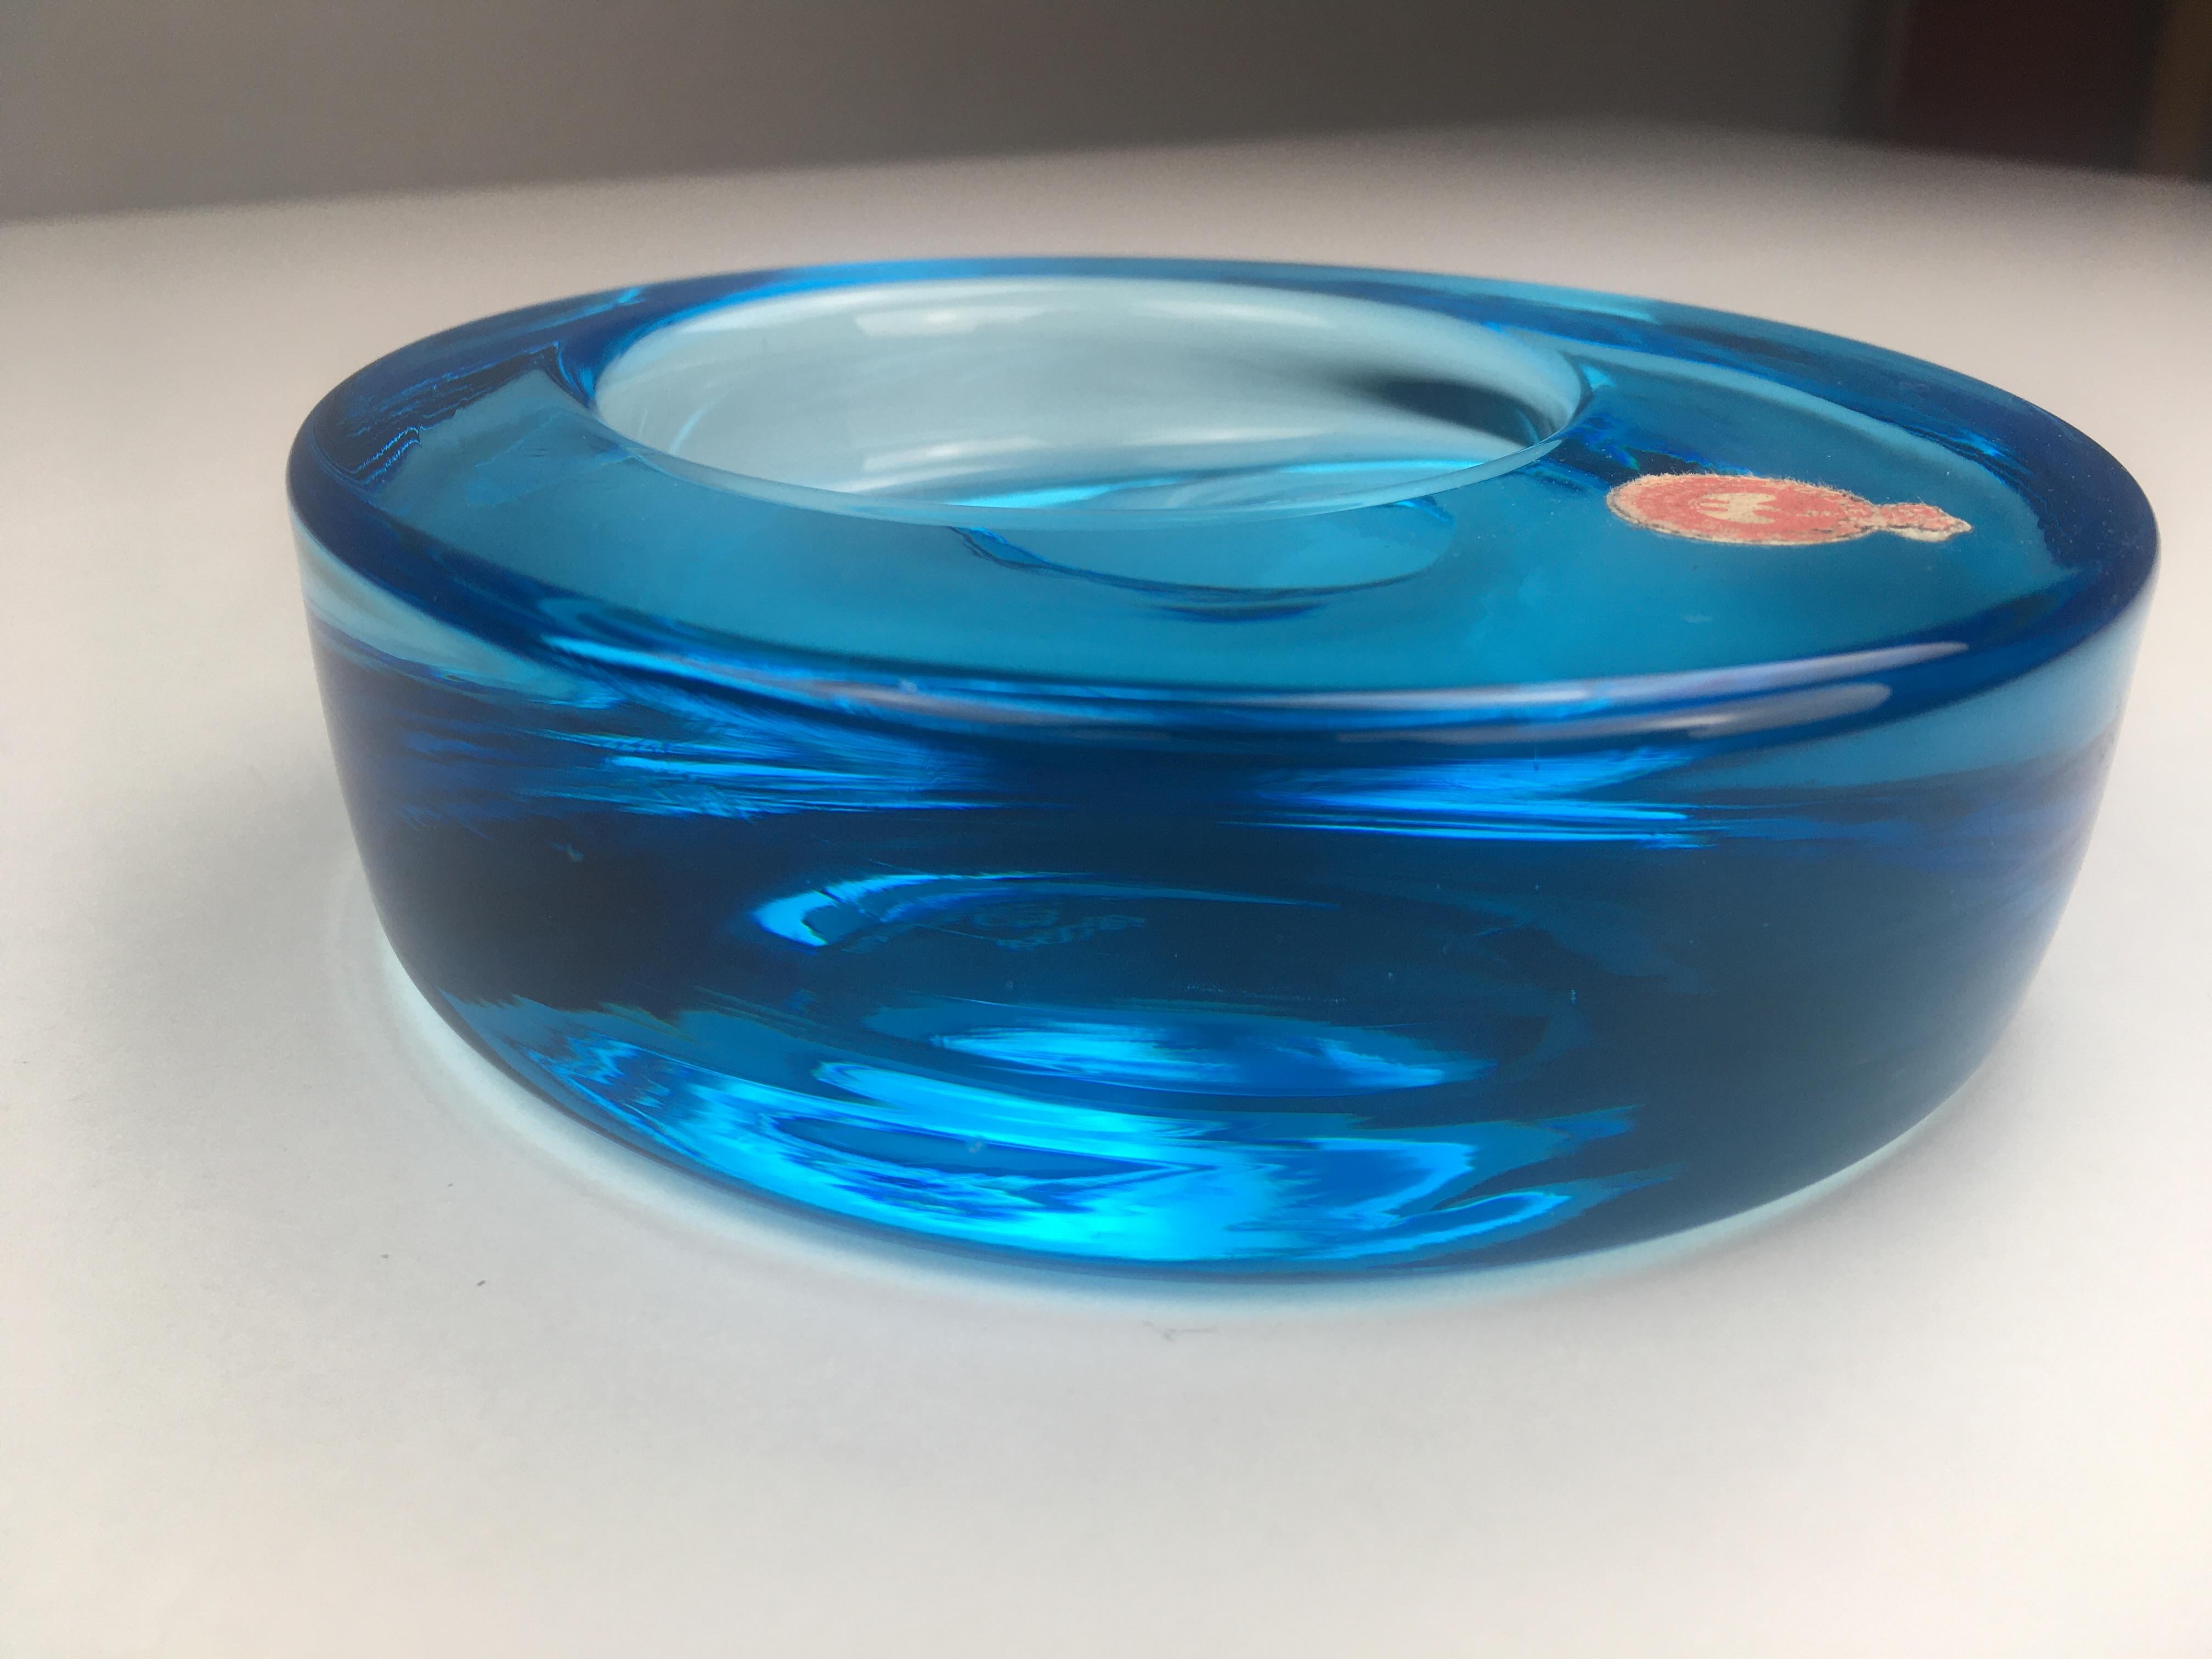 1960er Jahre dänischer mundgeblasener Aschenbecher aus blauem Glas - Schale von Per Lütken für Holmegaard.

Der kreisrunde, mundgeblasene Aschenbecher weist eine extrem reichhaltige Mischung aus fast allen Blautönen auf, vom sehr, sehr hellen,